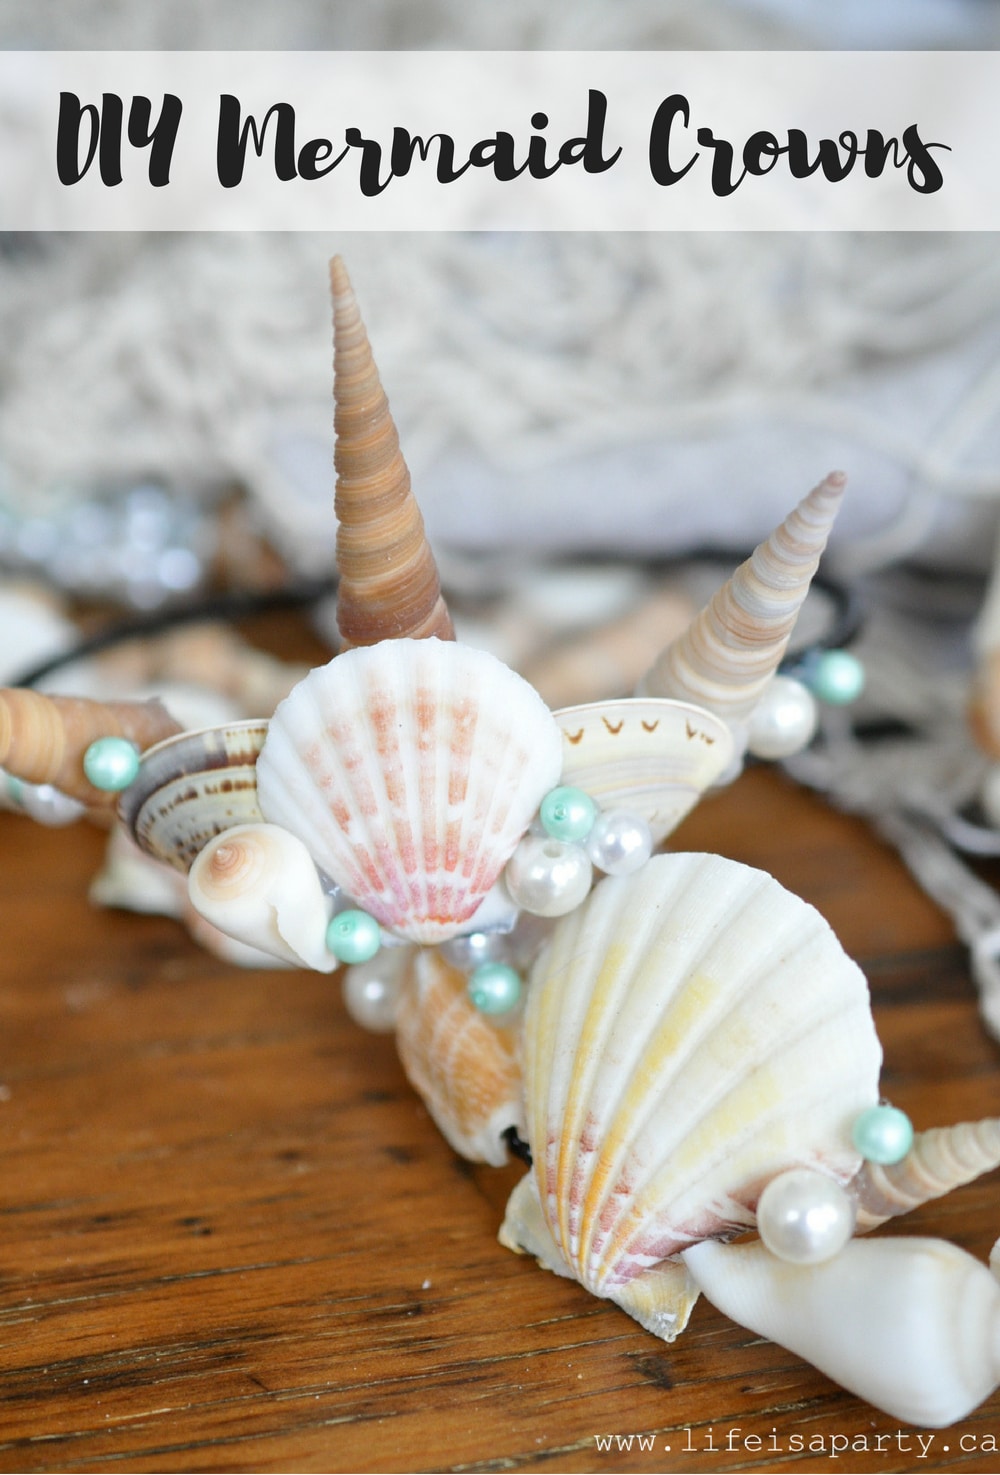 DIY Mermaid Crowns